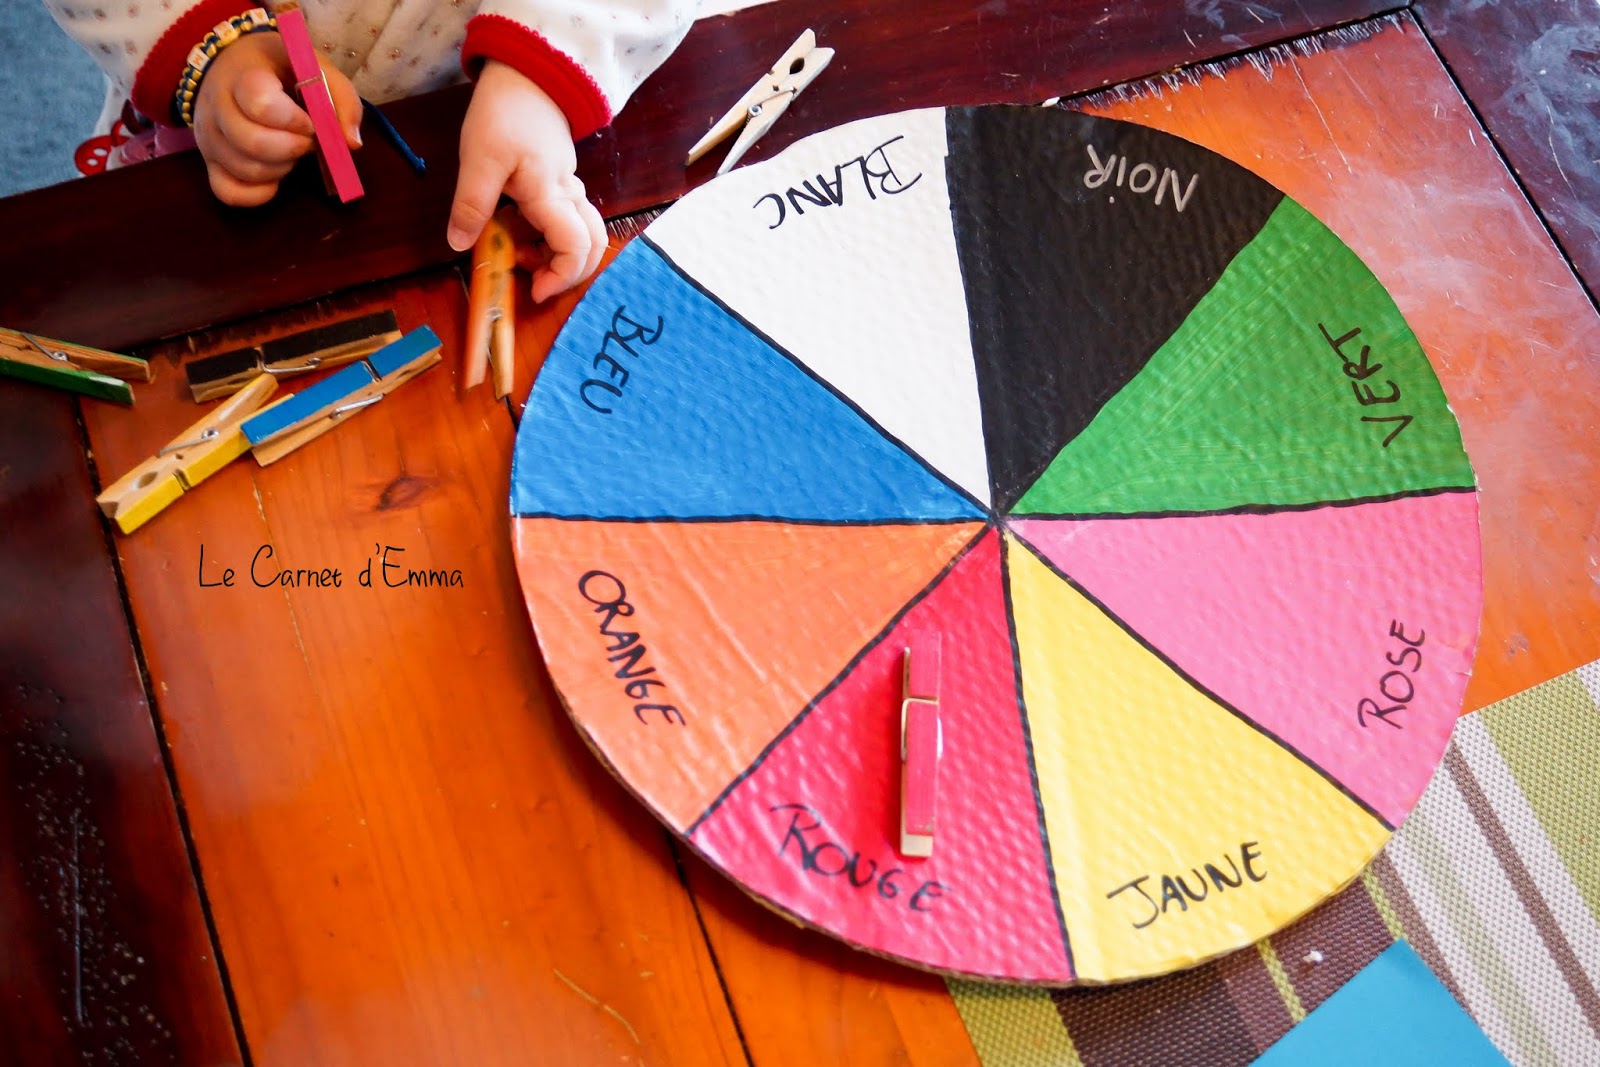 La roue des couleurs - Montessori - Tutos Peinture - 10 Doigts